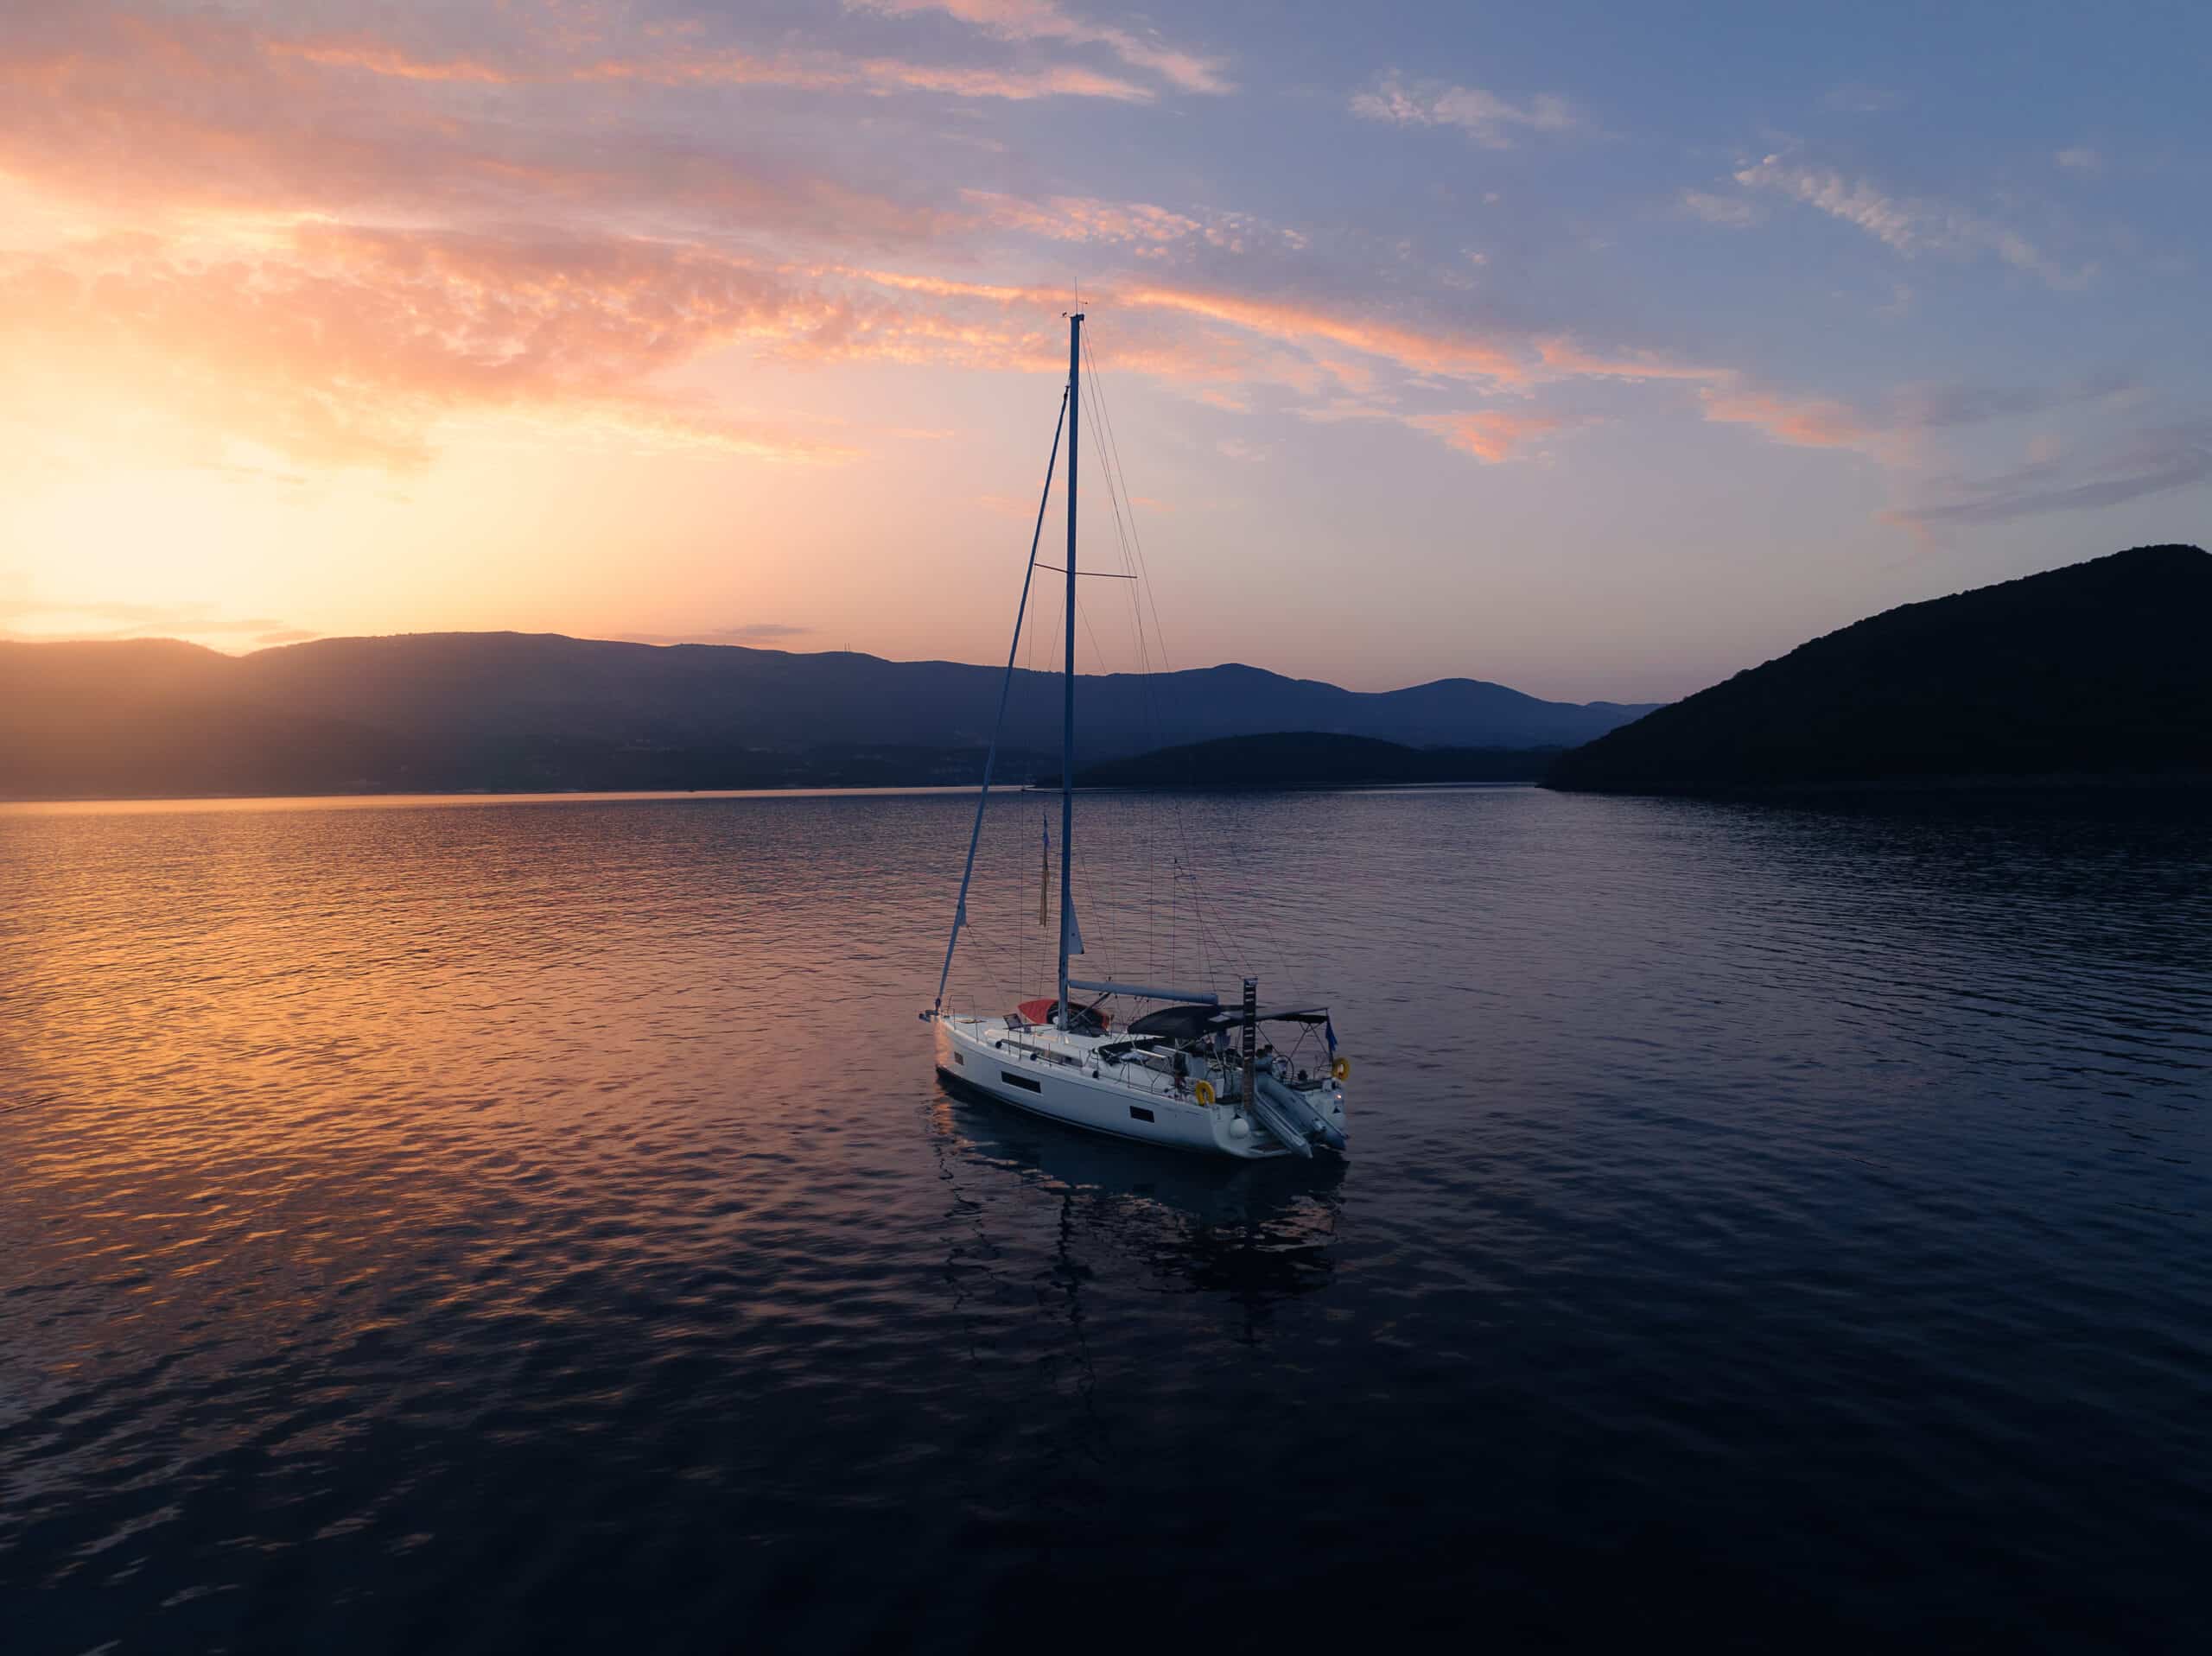 Ein Segelboot schwimmt friedlich auf ruhigem Wasser während eines leuchtenden Sonnenuntergangs und träumt vielleicht von einer Atlantiküberquerung. Der Himmel ist in Orange-, Rosa- und Lilatönen gefärbt. Im Hintergrund zeichnen sich Berge und Hügel ab, was zu der ruhigen und malerischen Szene beiträgt.